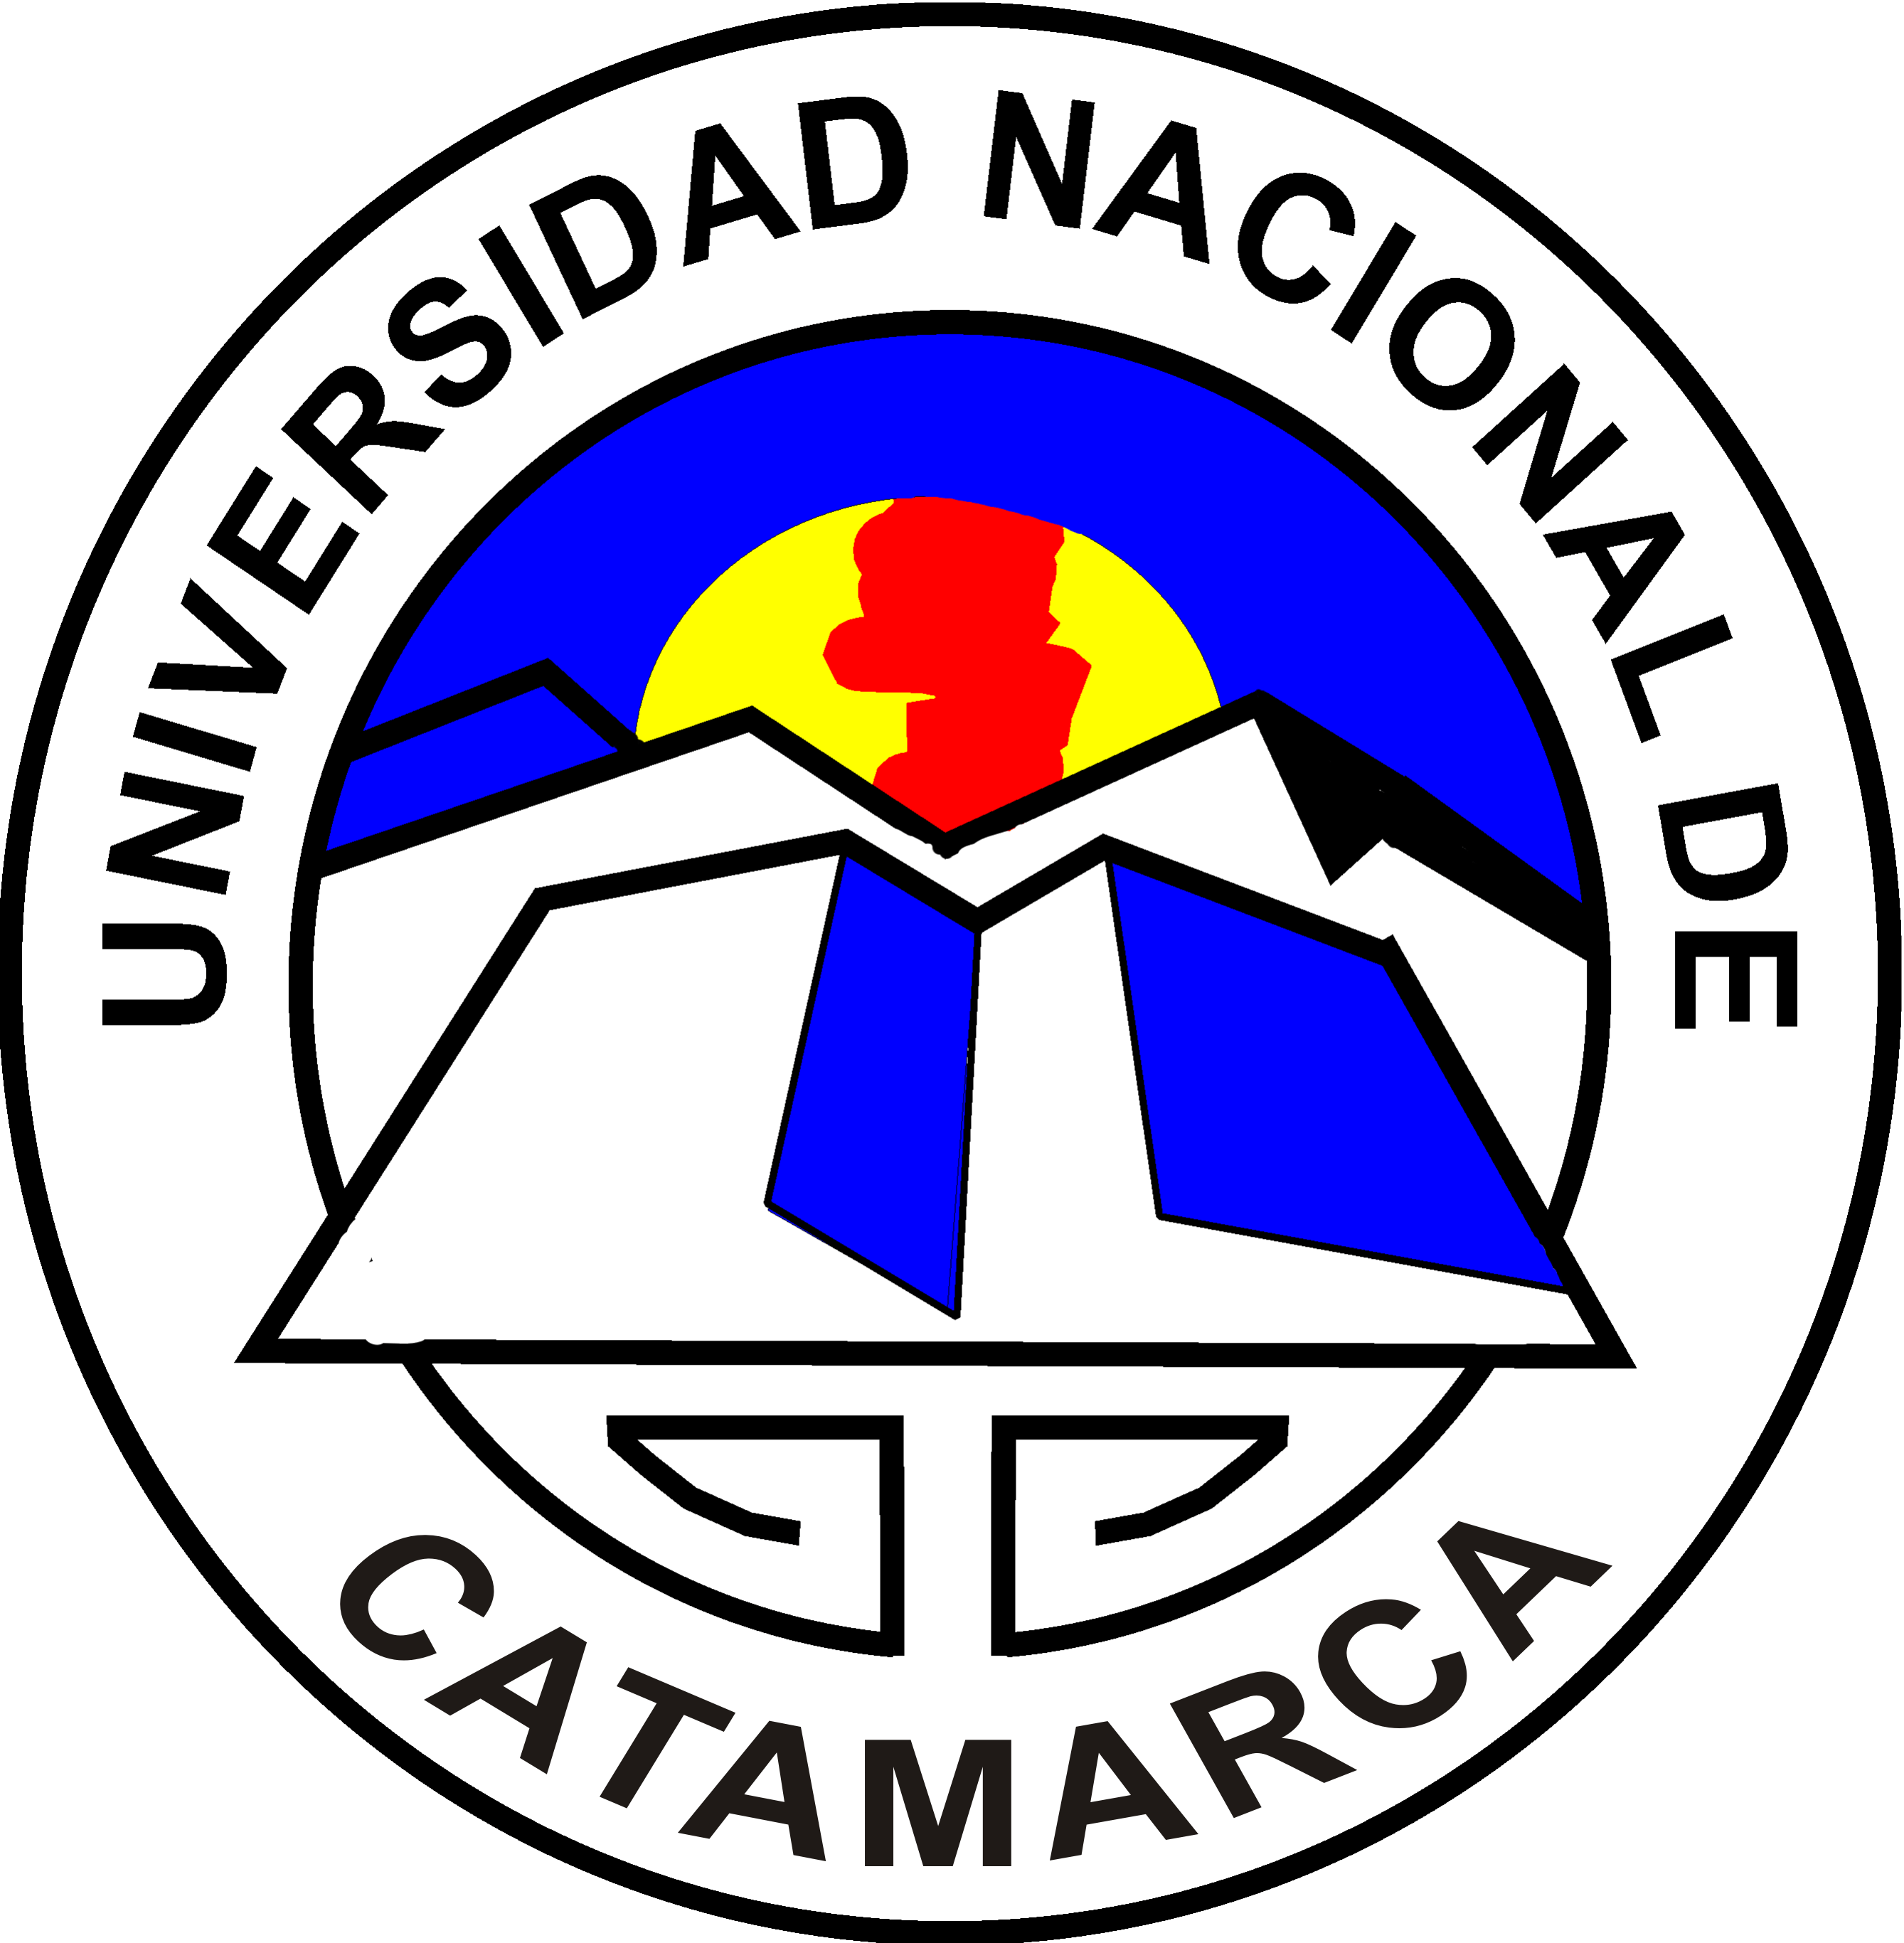 Univ Nacional de Catamarca